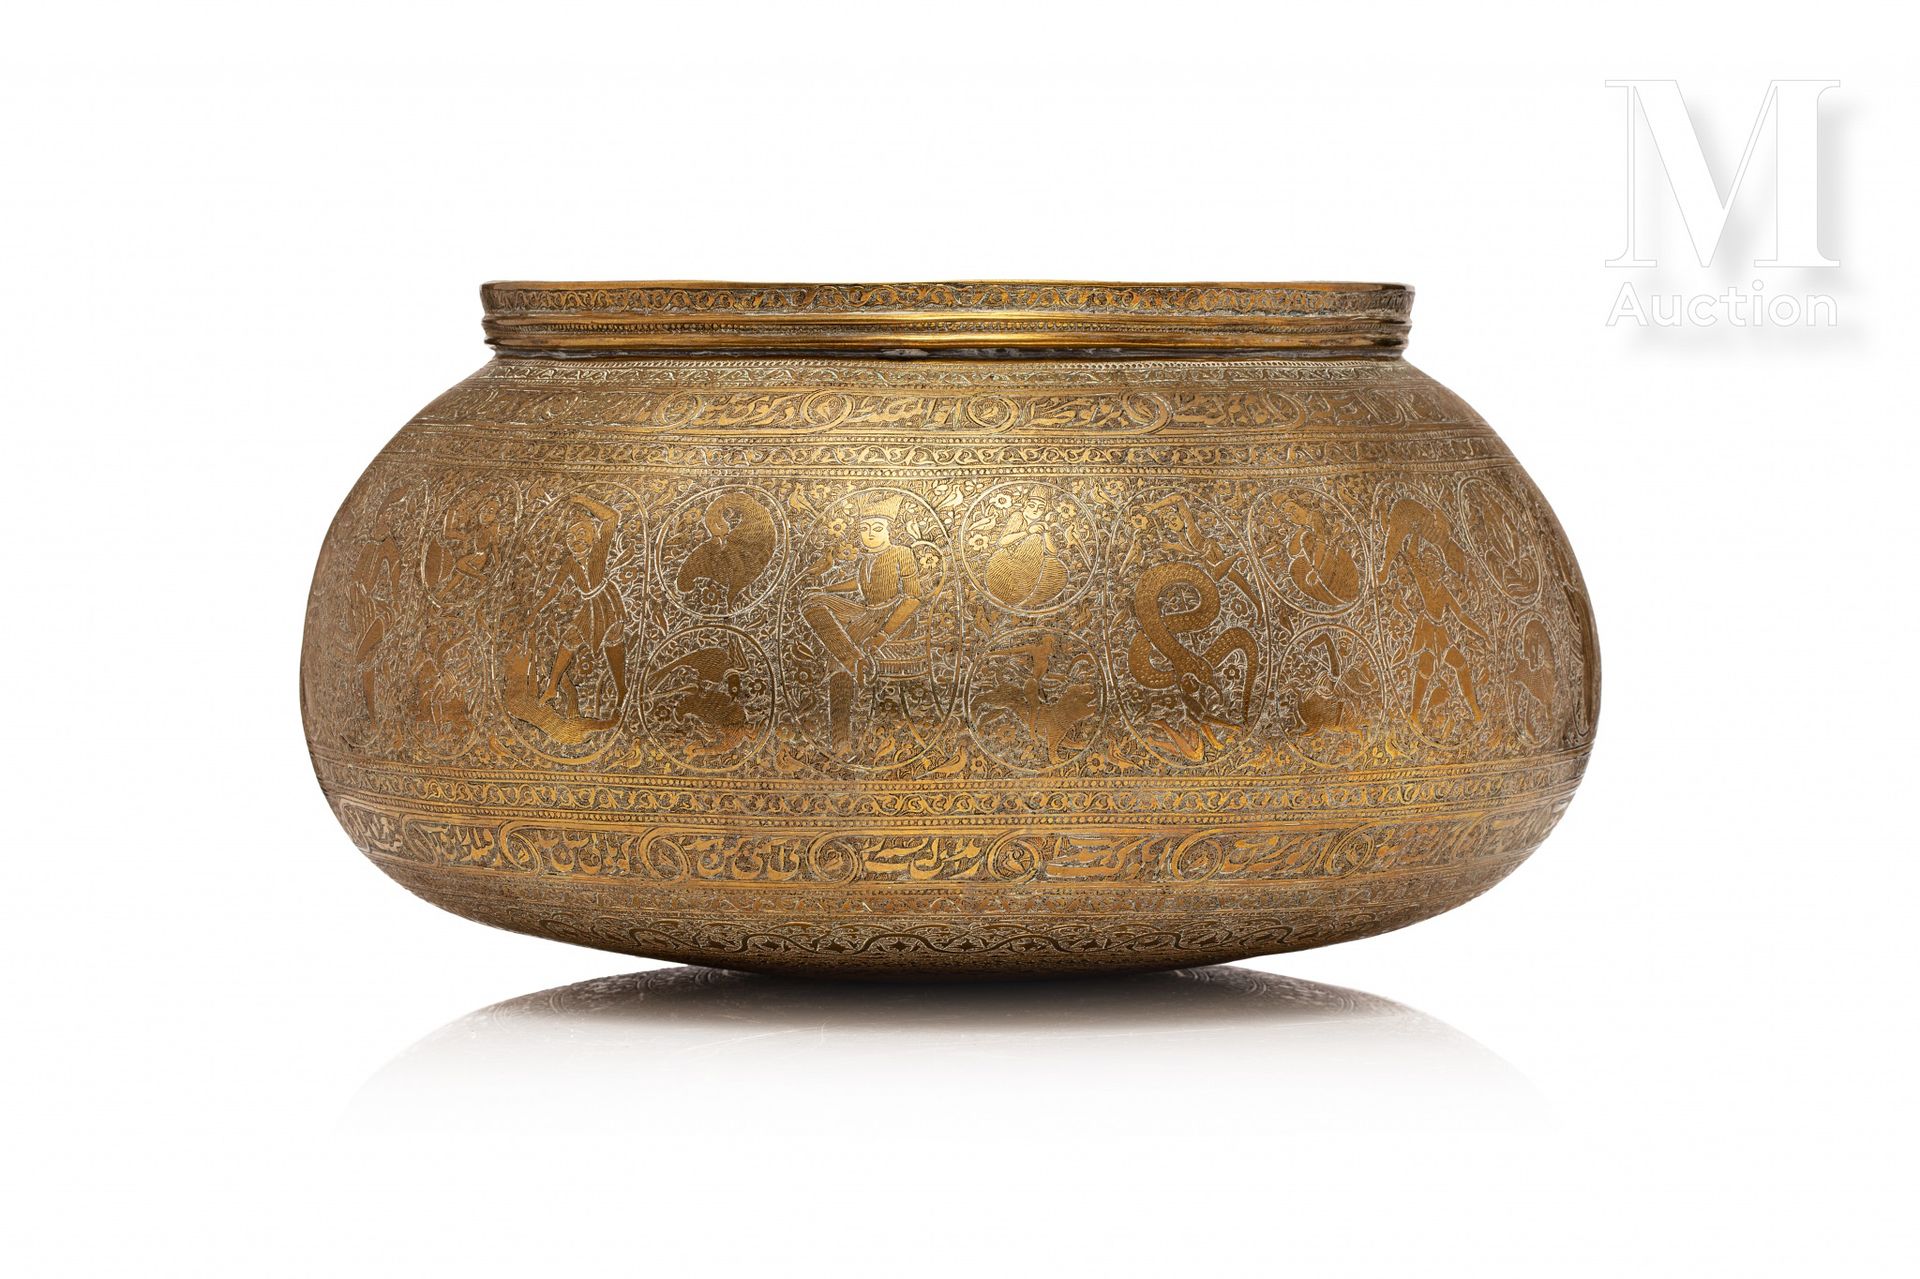 Tâs - Bassin qajar Iran, um 1860-1880

Sehr fein ziseliertes Kupfer mit einem De&hellip;